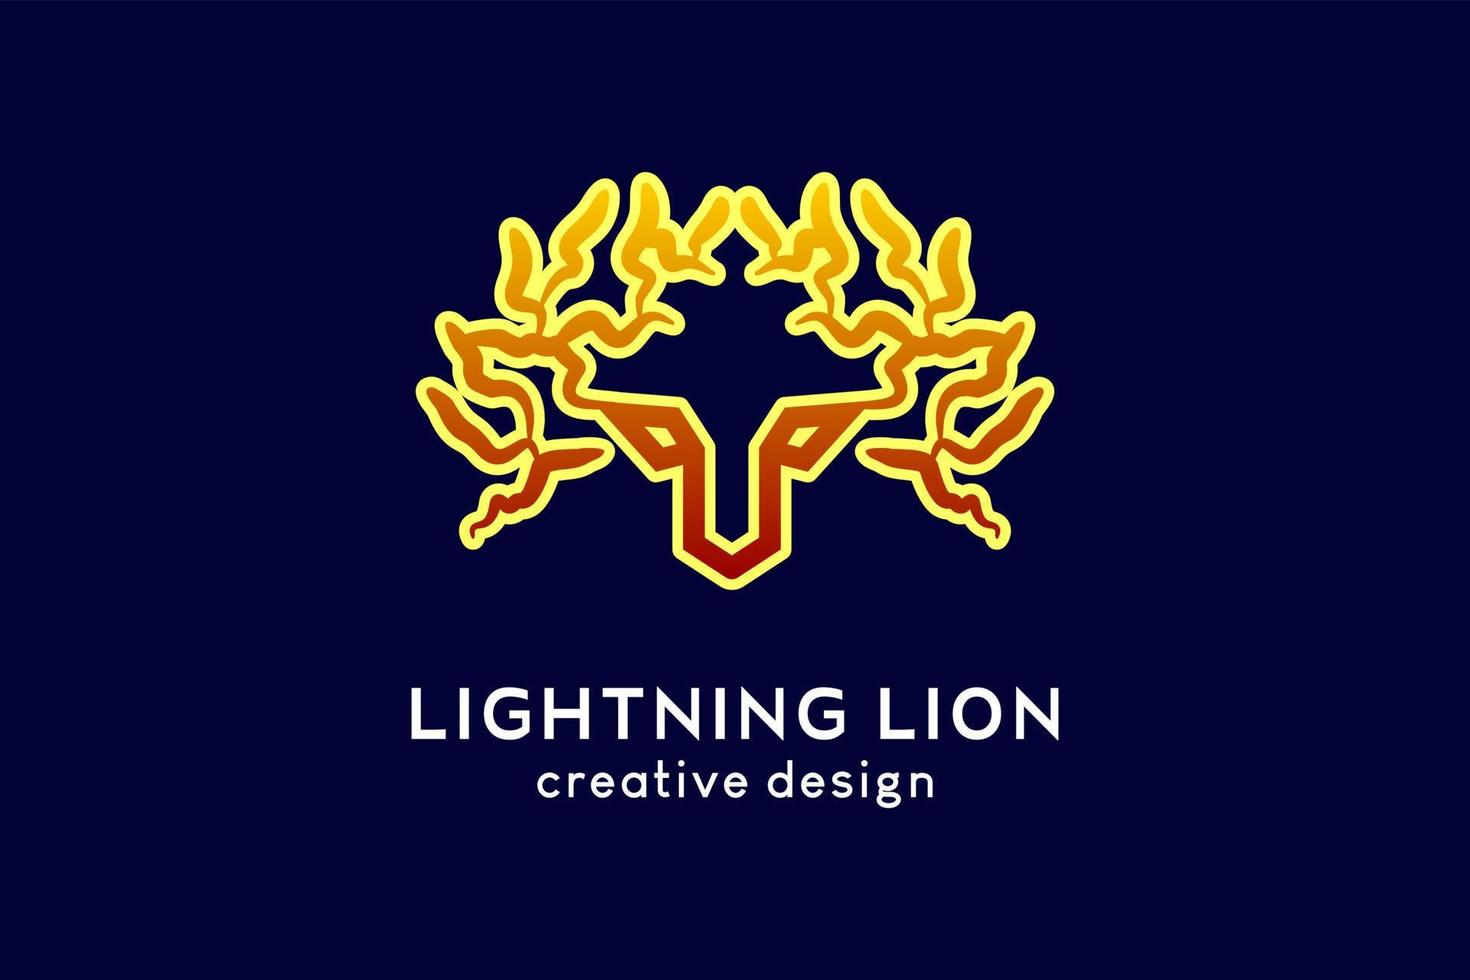 diseño de logotipo de león relámpago o tigre relámpago, icono de relámpago se combina con una cara de león o tigre en un concepto creativo vector